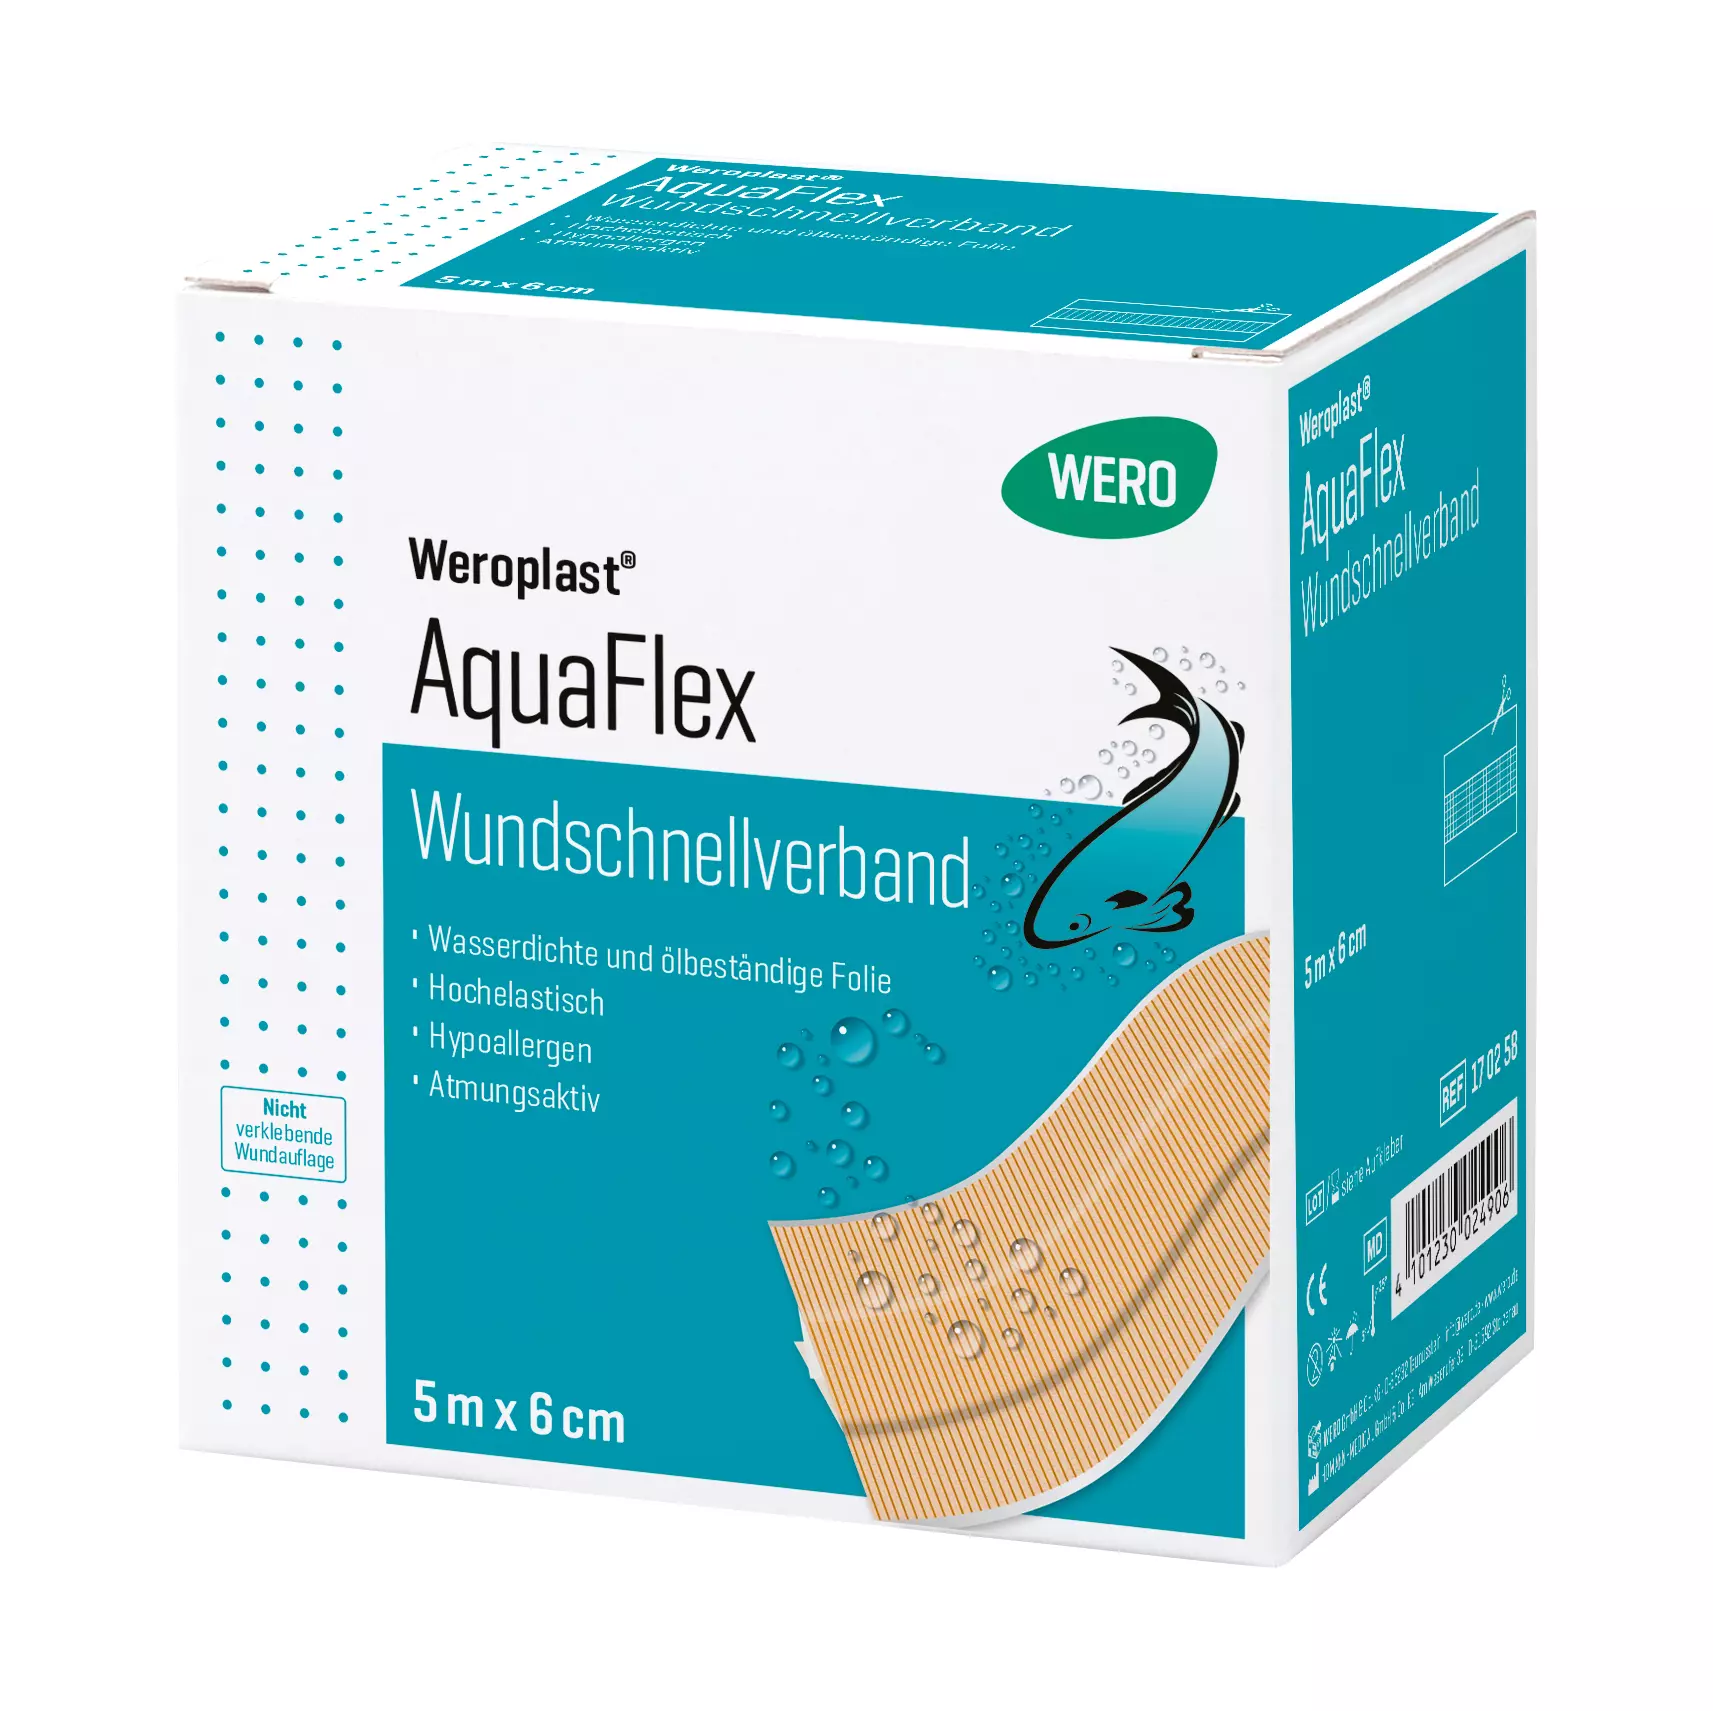 Wundschnellverband Weroplast® AquaFlex - 6 cm, 5 m